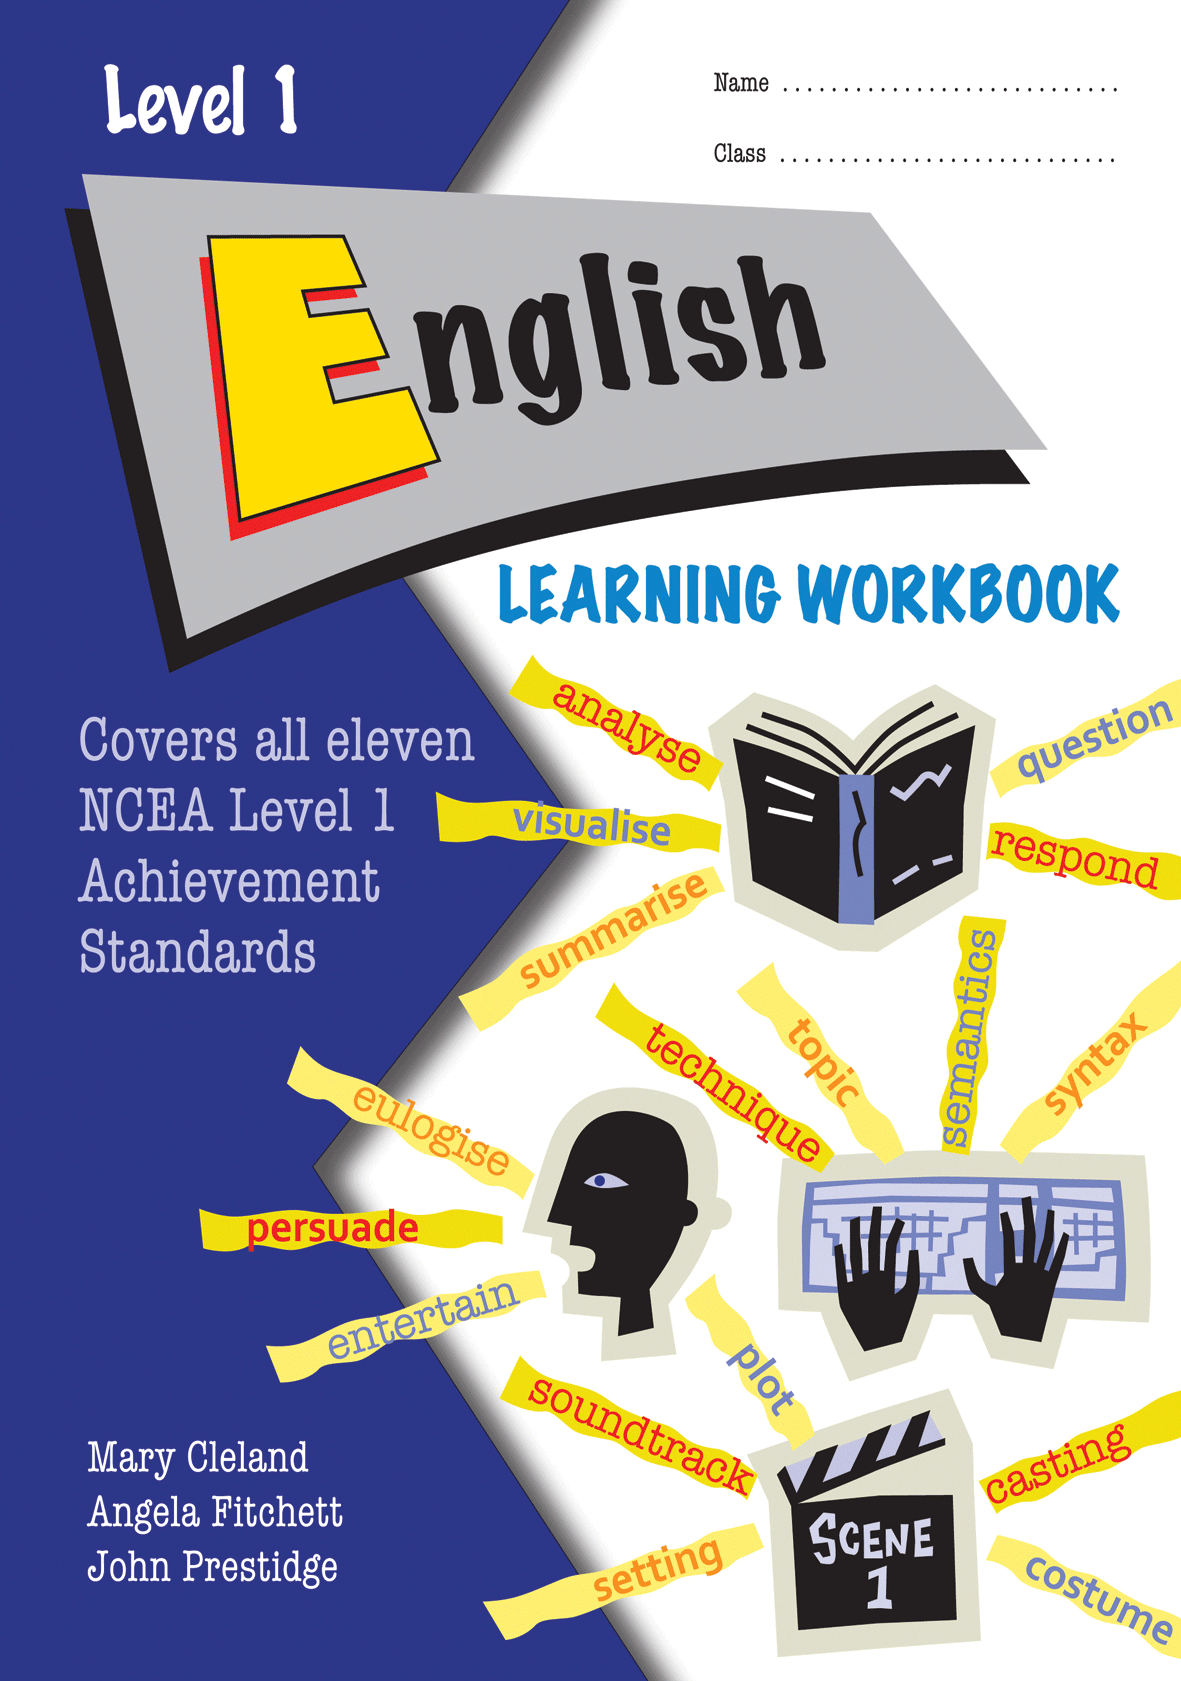 Level 1 English Learning Workbook